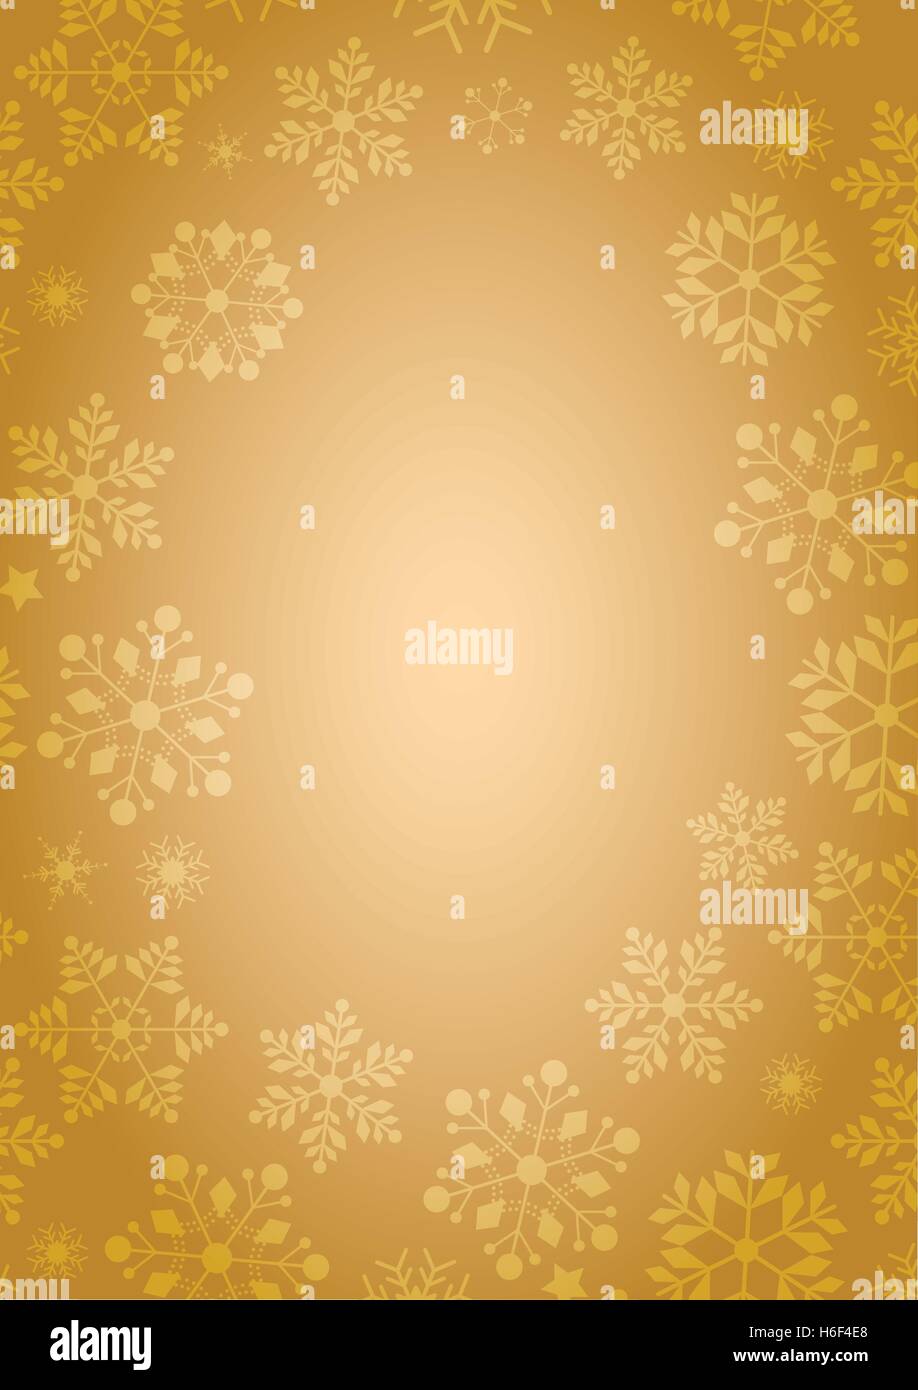 Dimensioni A4 fondo oro con fiocchi di neve invernale confine in formato vettoriale Illustrazione Vettoriale